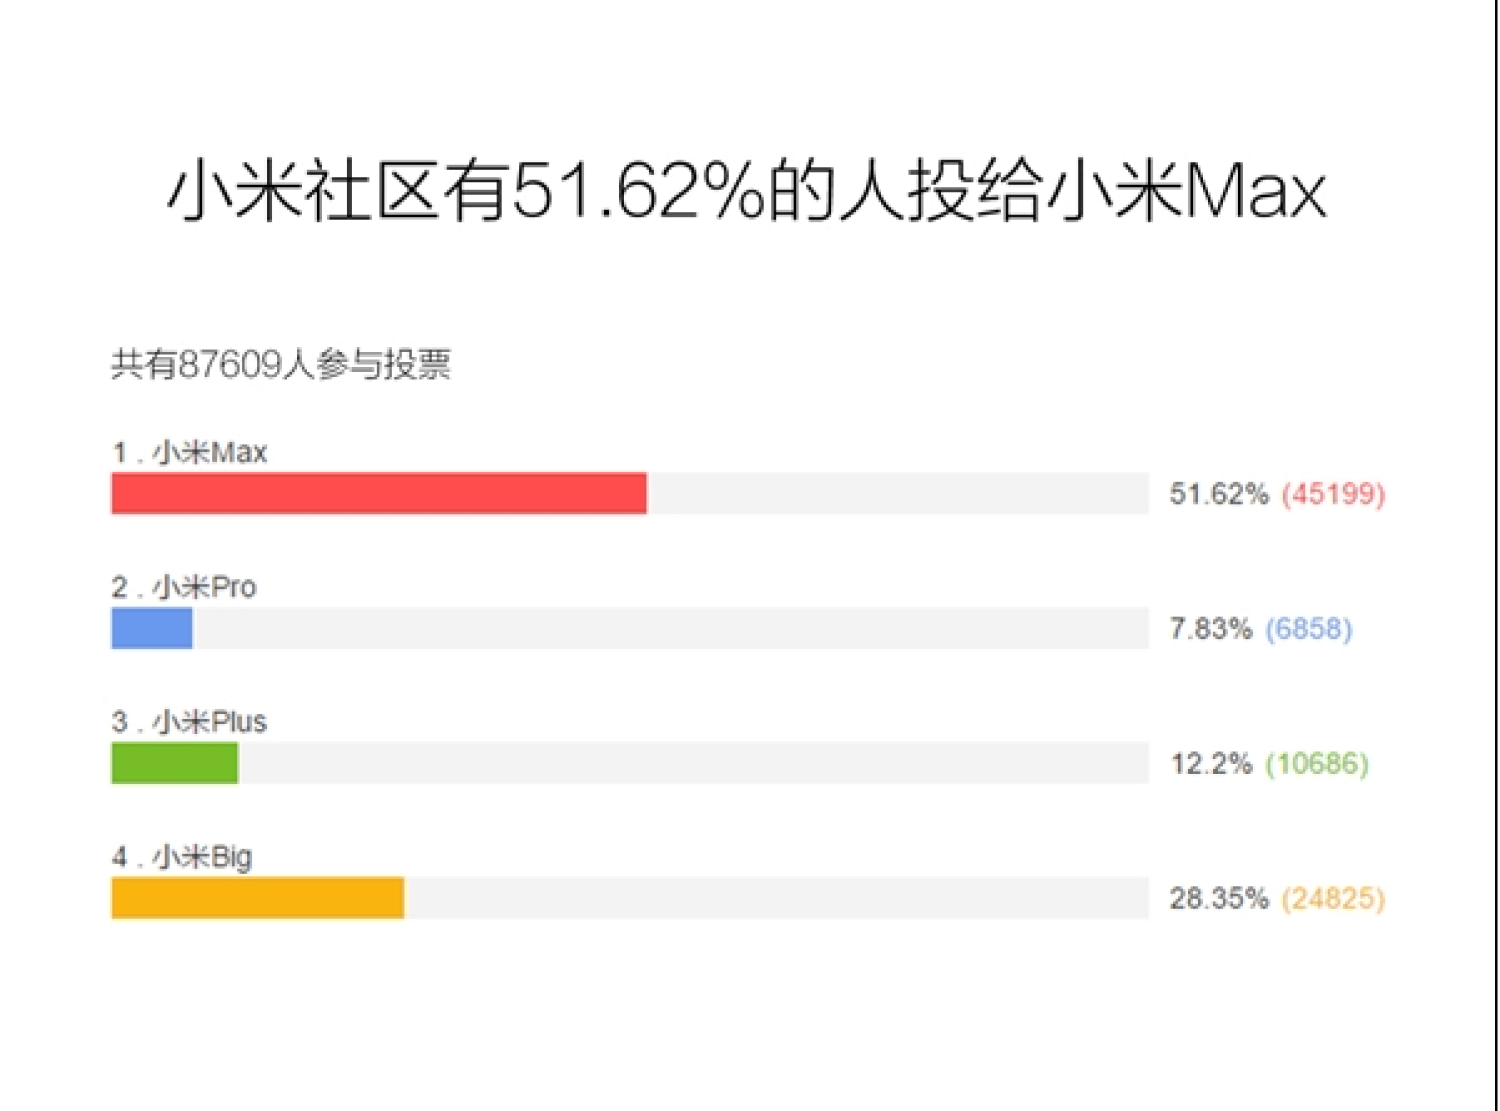 Xiaomi Max может стать самым большим смартфоном компании. Фото.